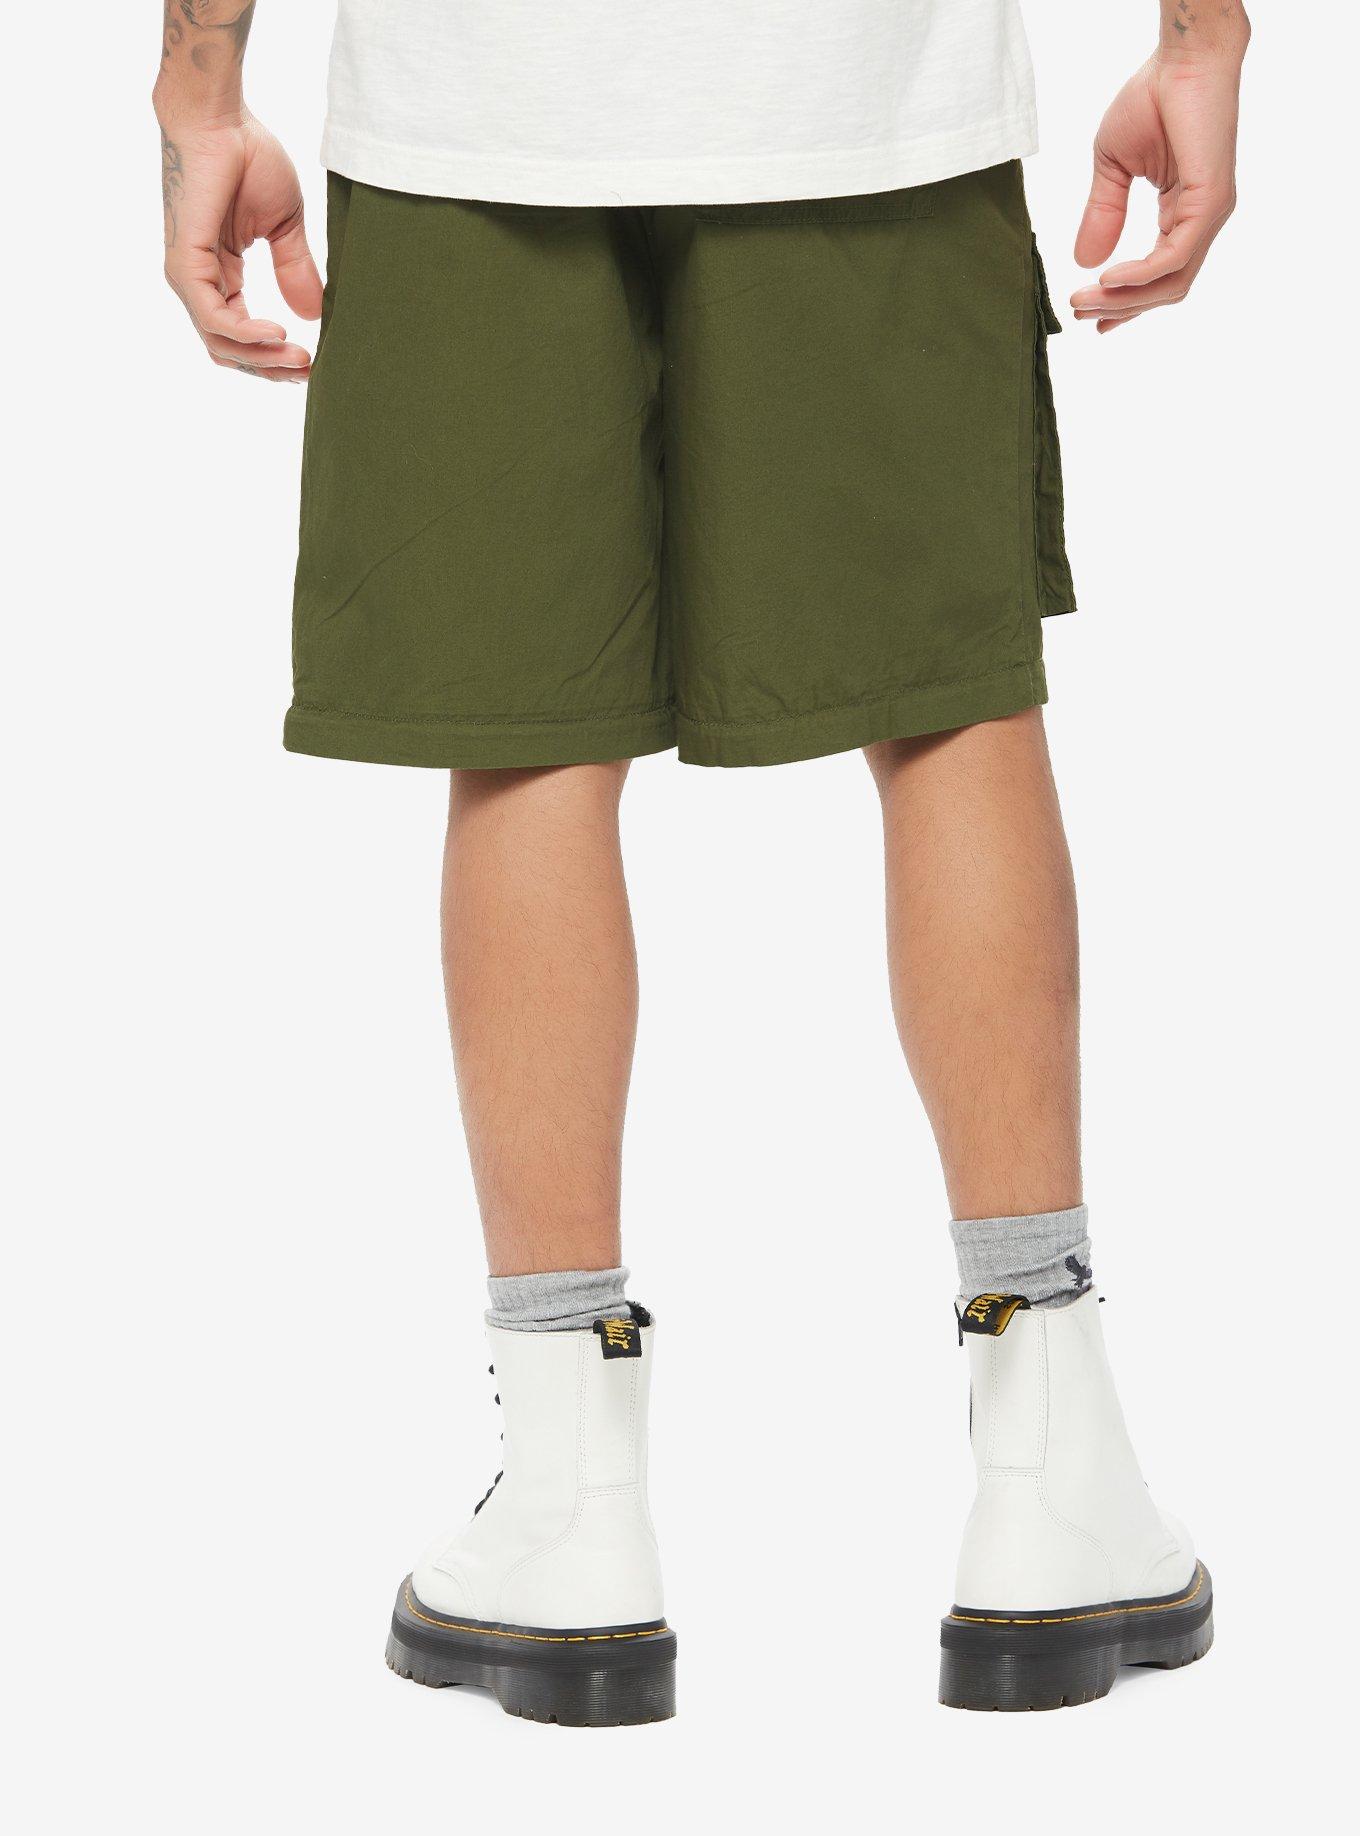 Green Cargo Zip-Off Pants, GREEN, alternate